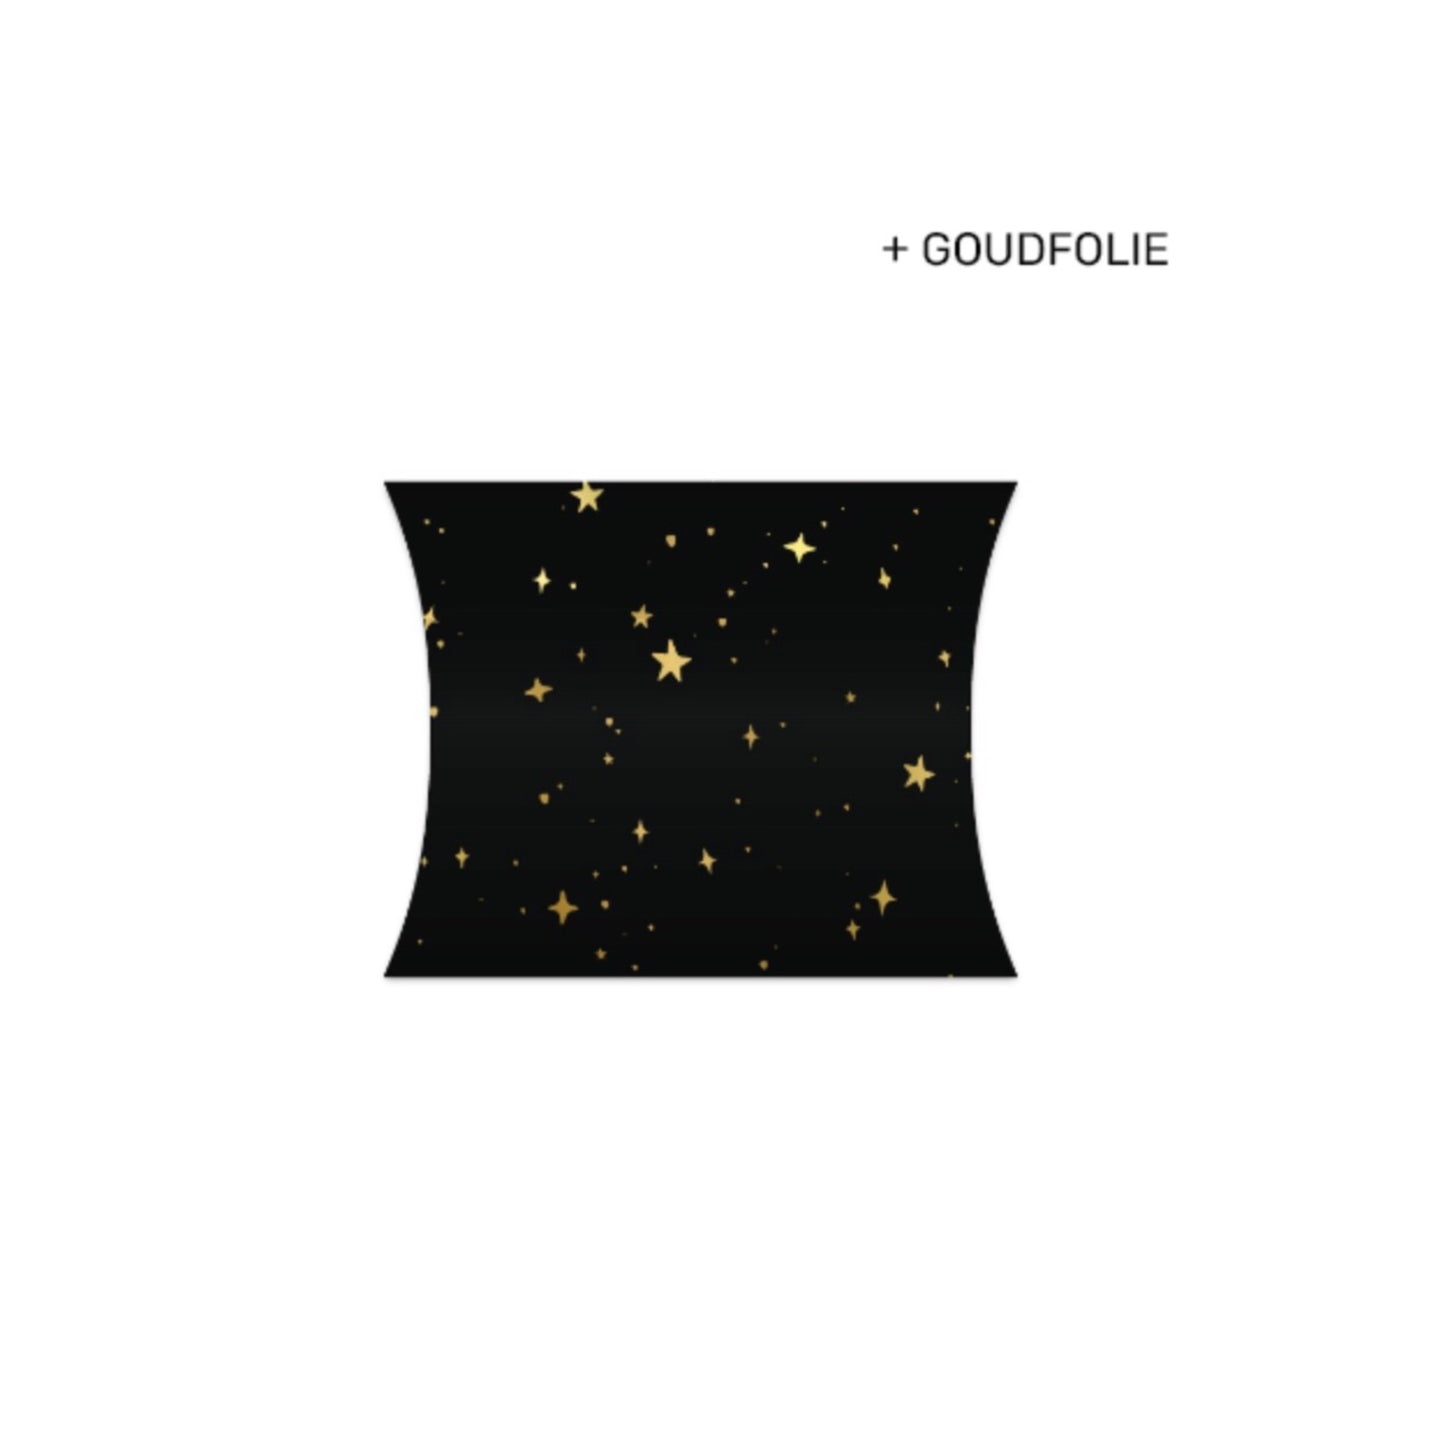 Gondeldoosje | little stars black